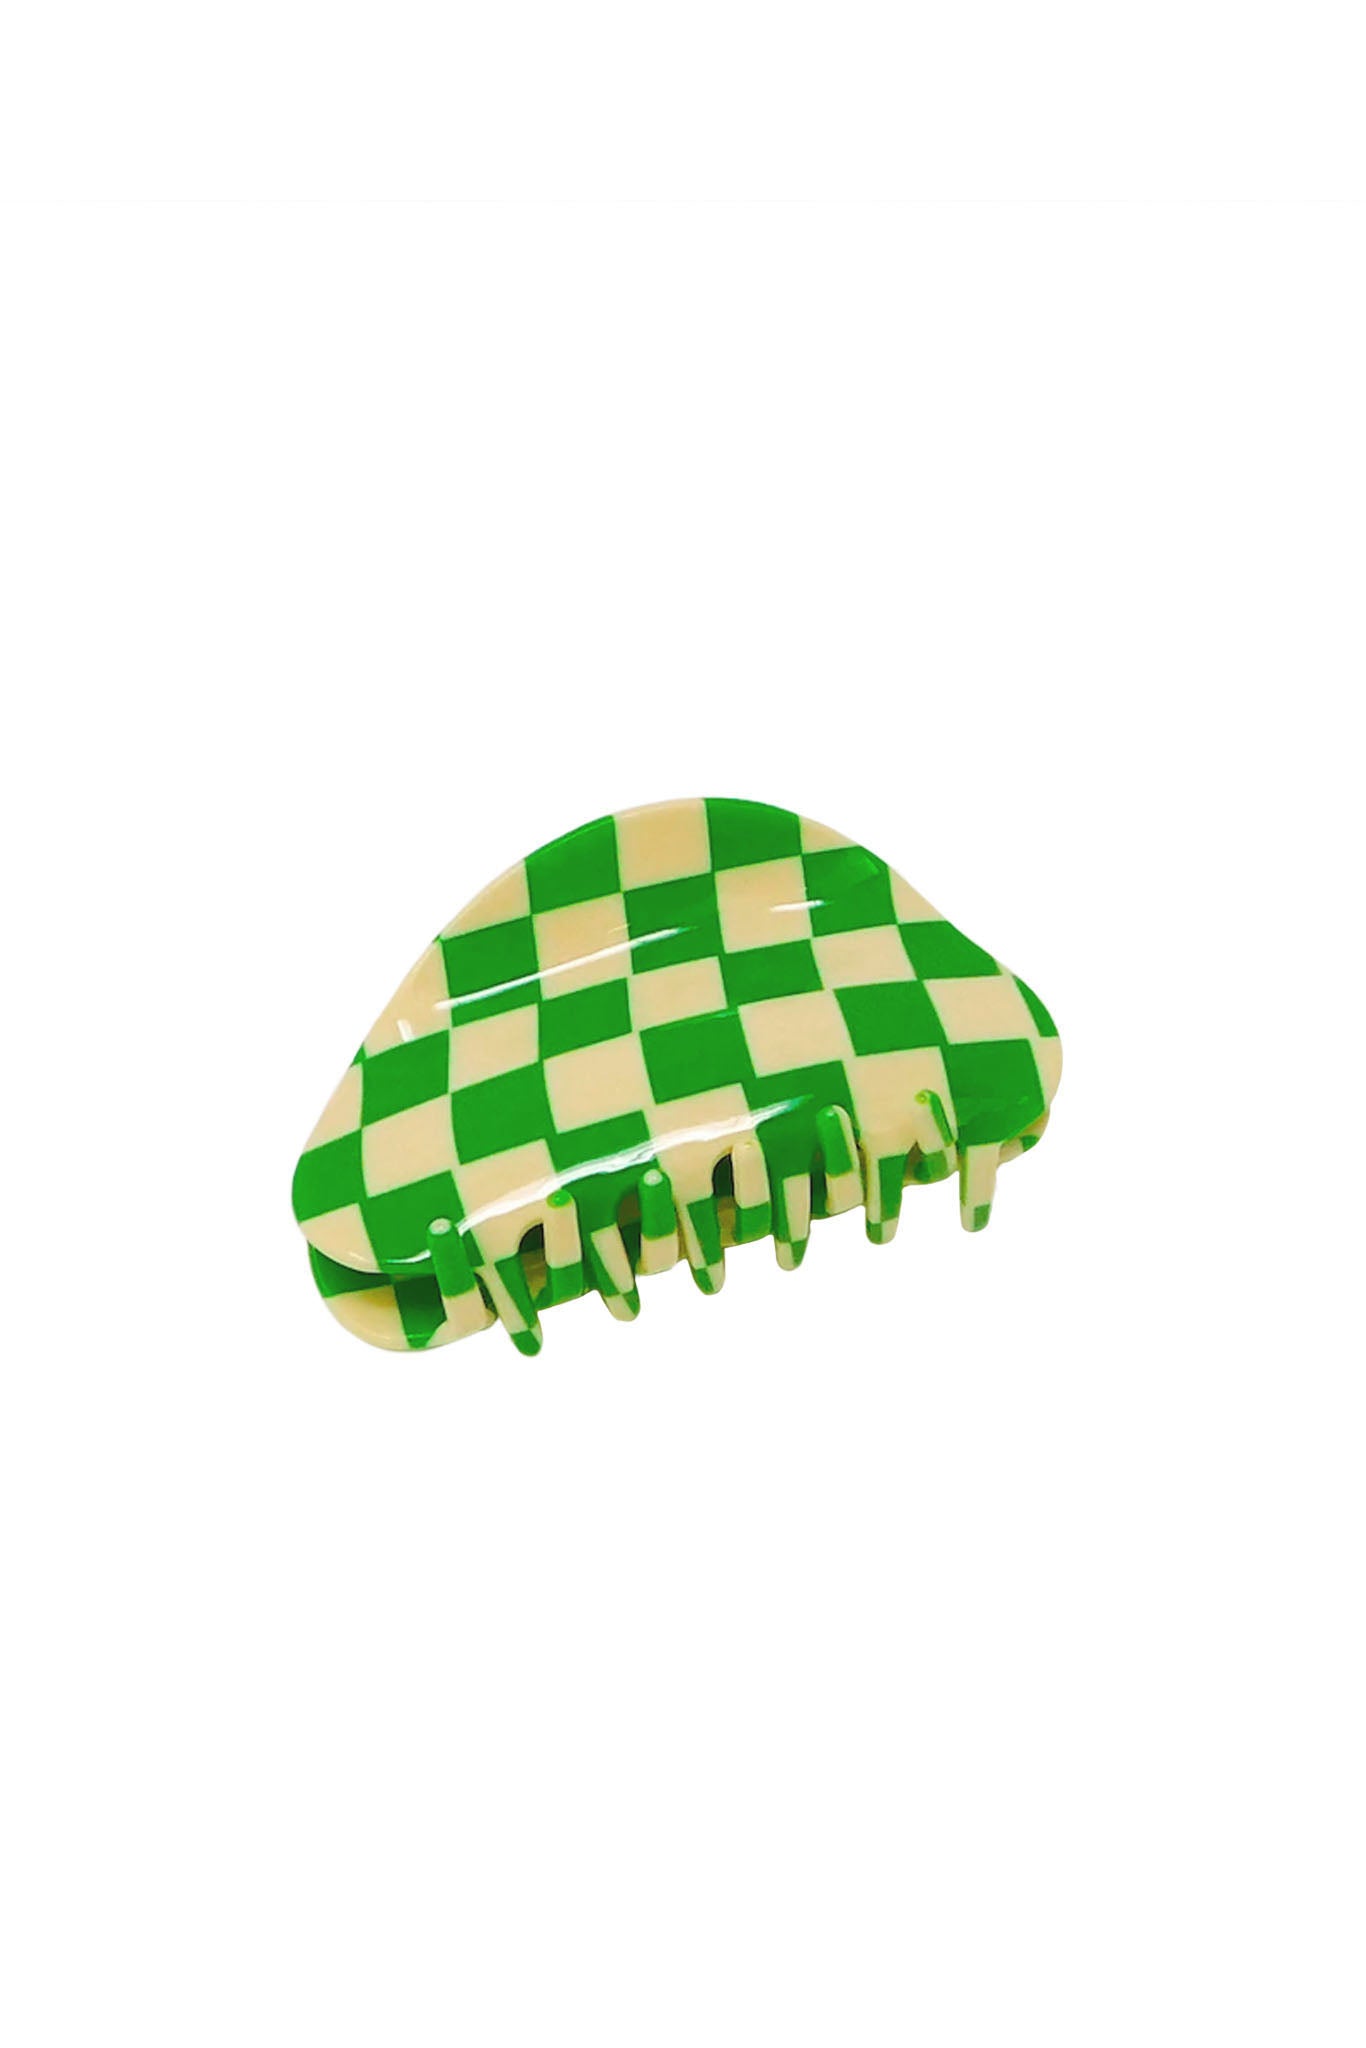 Green Checker Claw